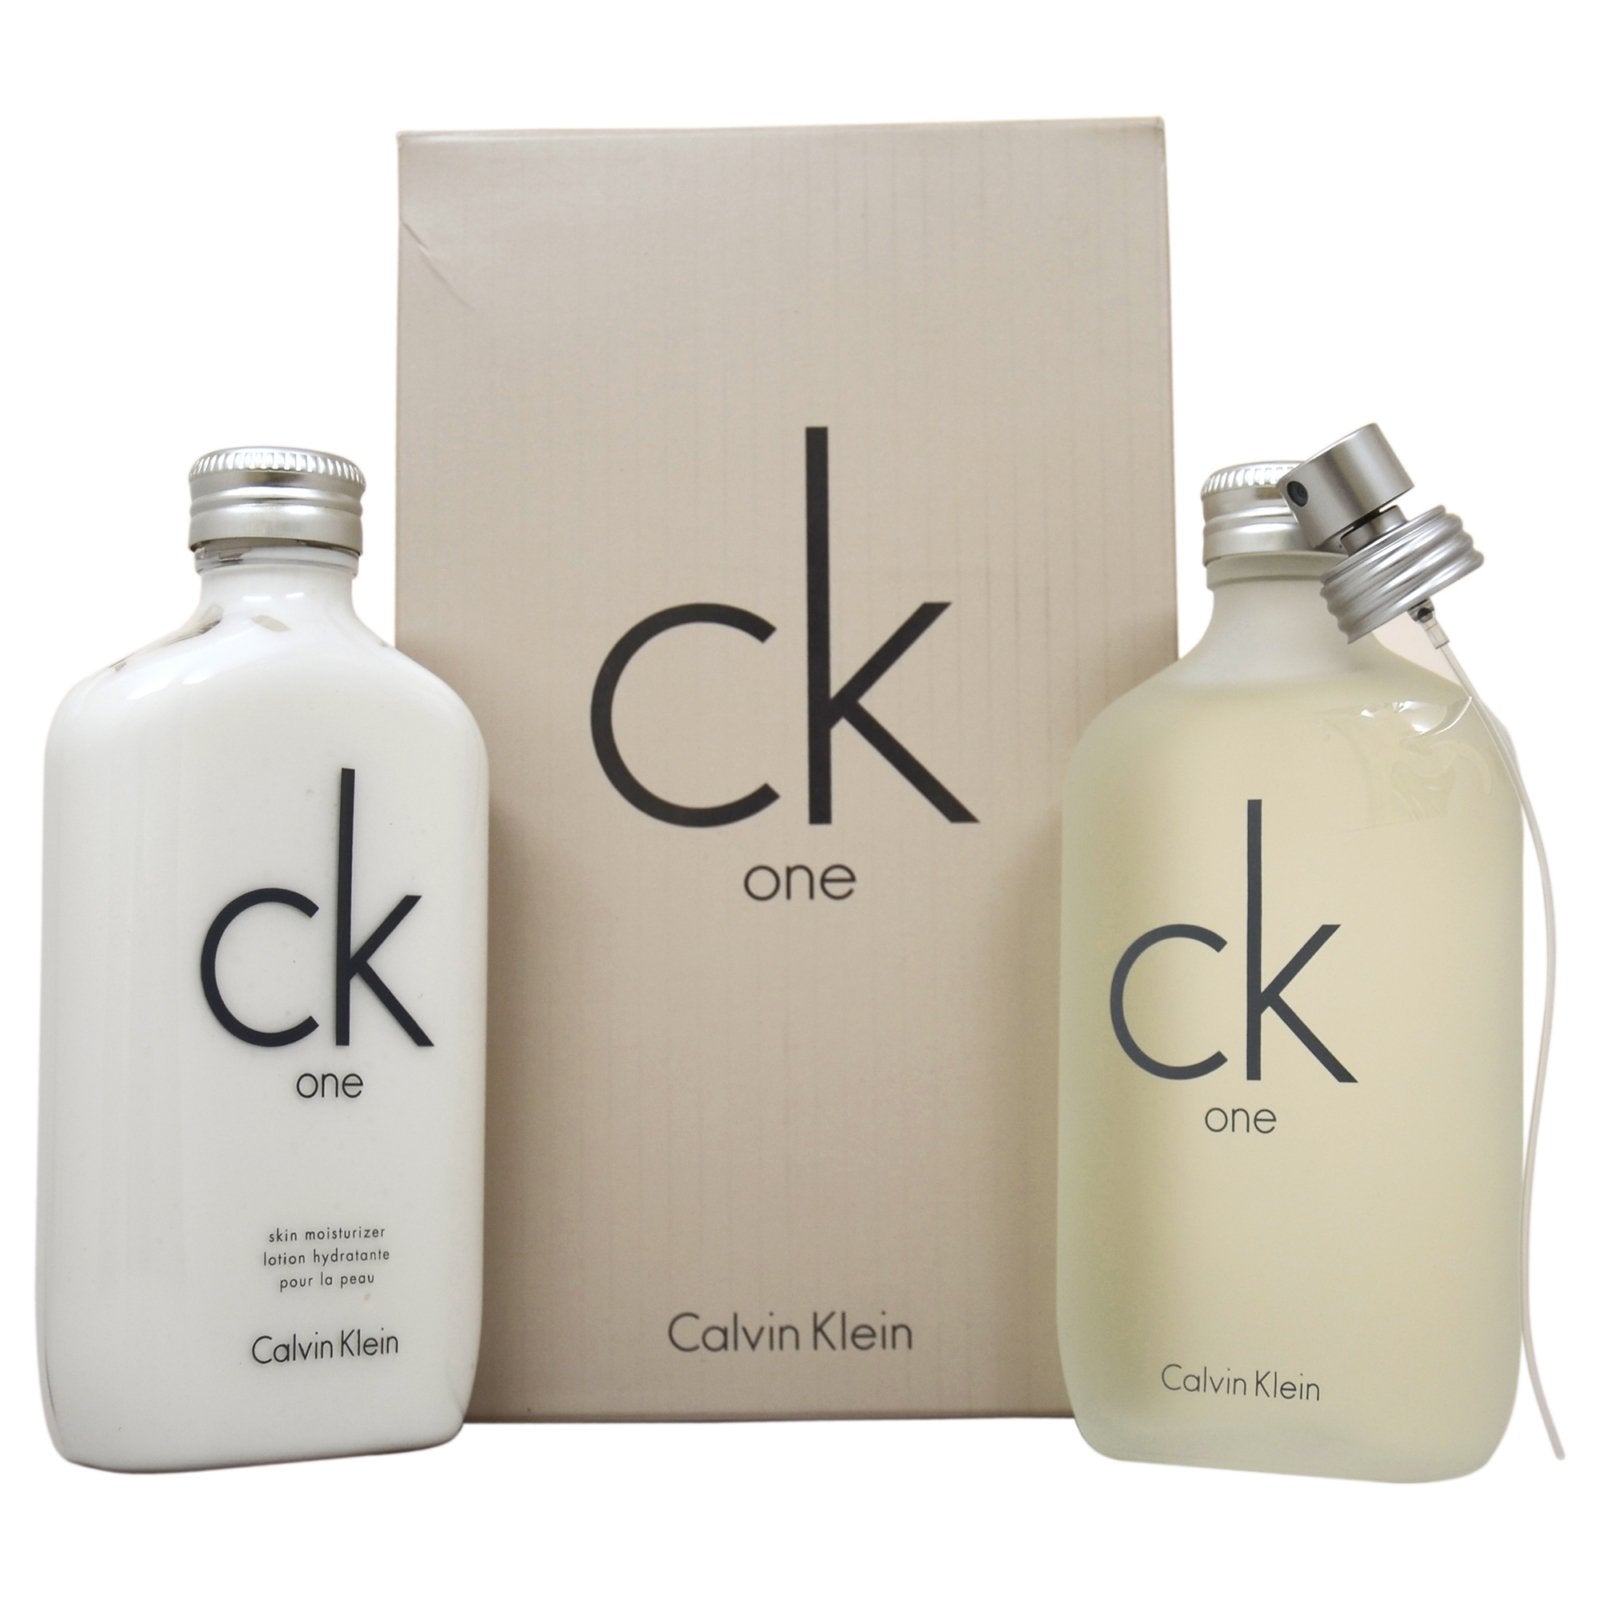 CALVIN KLEIN - CK One para hombre y mujer / SET - 200 ml Eau De Toilette Spray + 1 Regalo